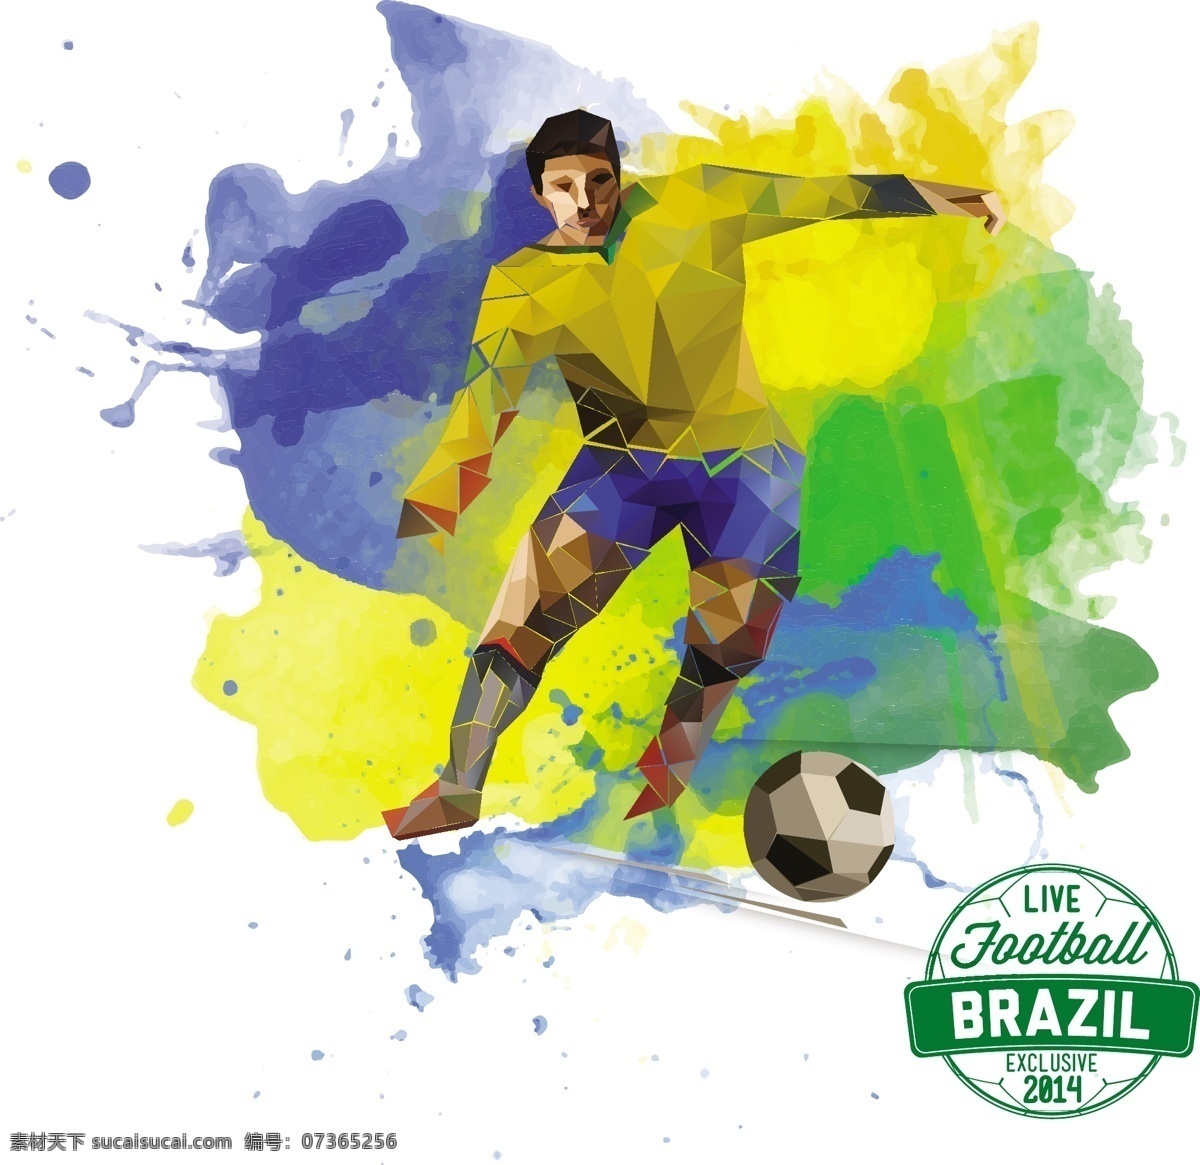 2014 足球 世界杯 巴西 向量 杯 播放器 几何 颜色 油墨 足球世界杯 桑巴足球 矢量图 其他矢量图